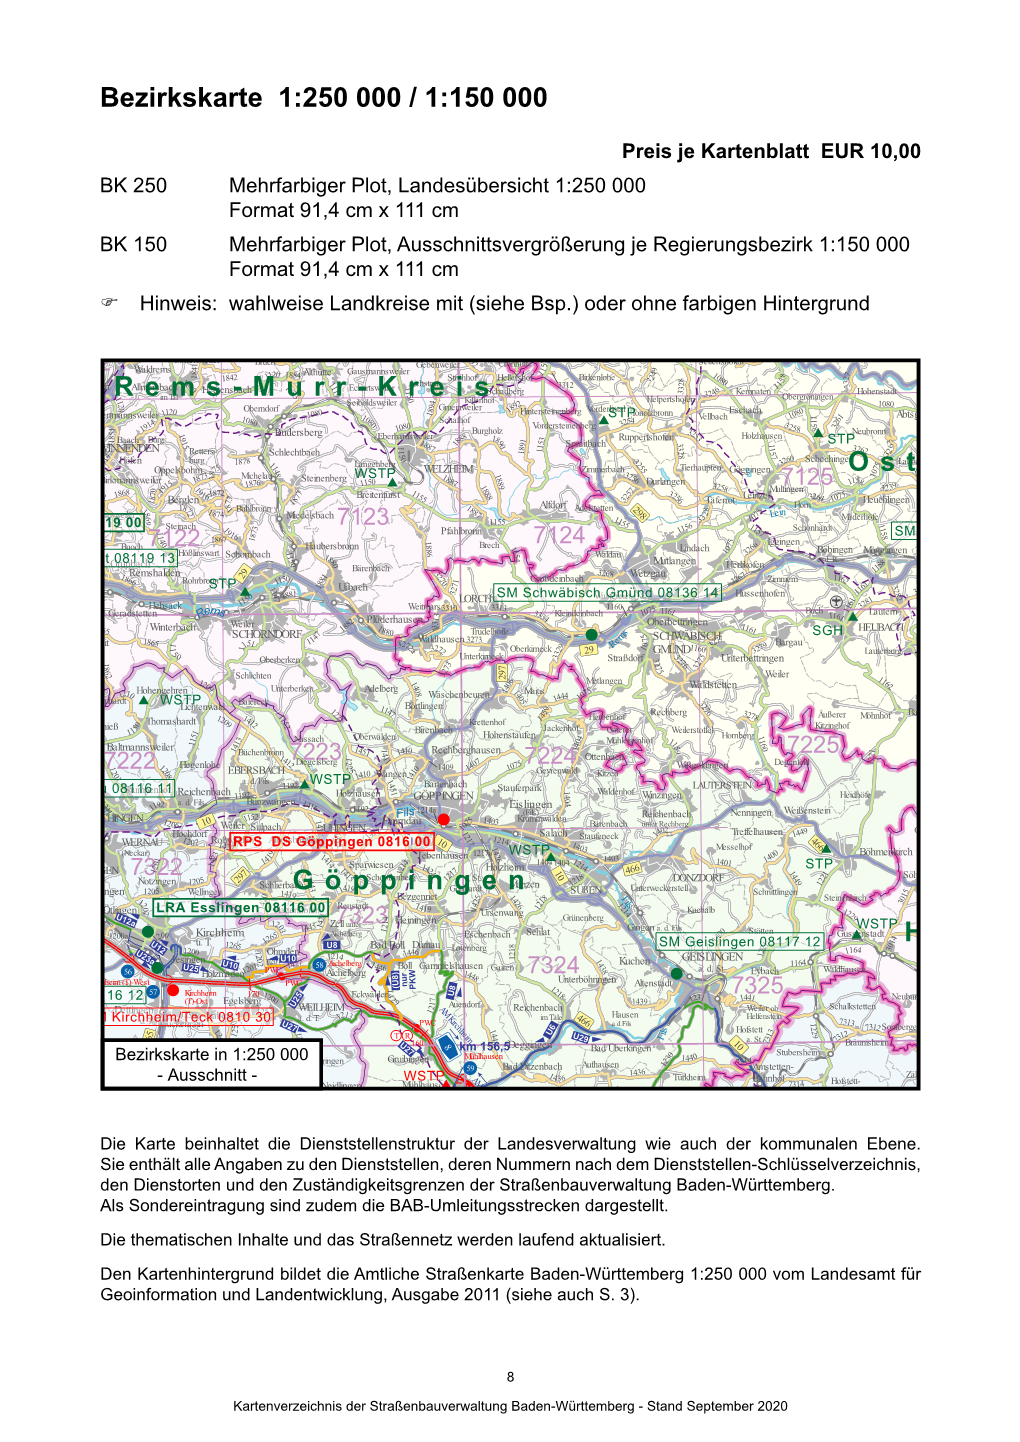 H Ost Göppingen Rems-Murr-Kreis Bezirkskarte 1:250 000 / 1:150